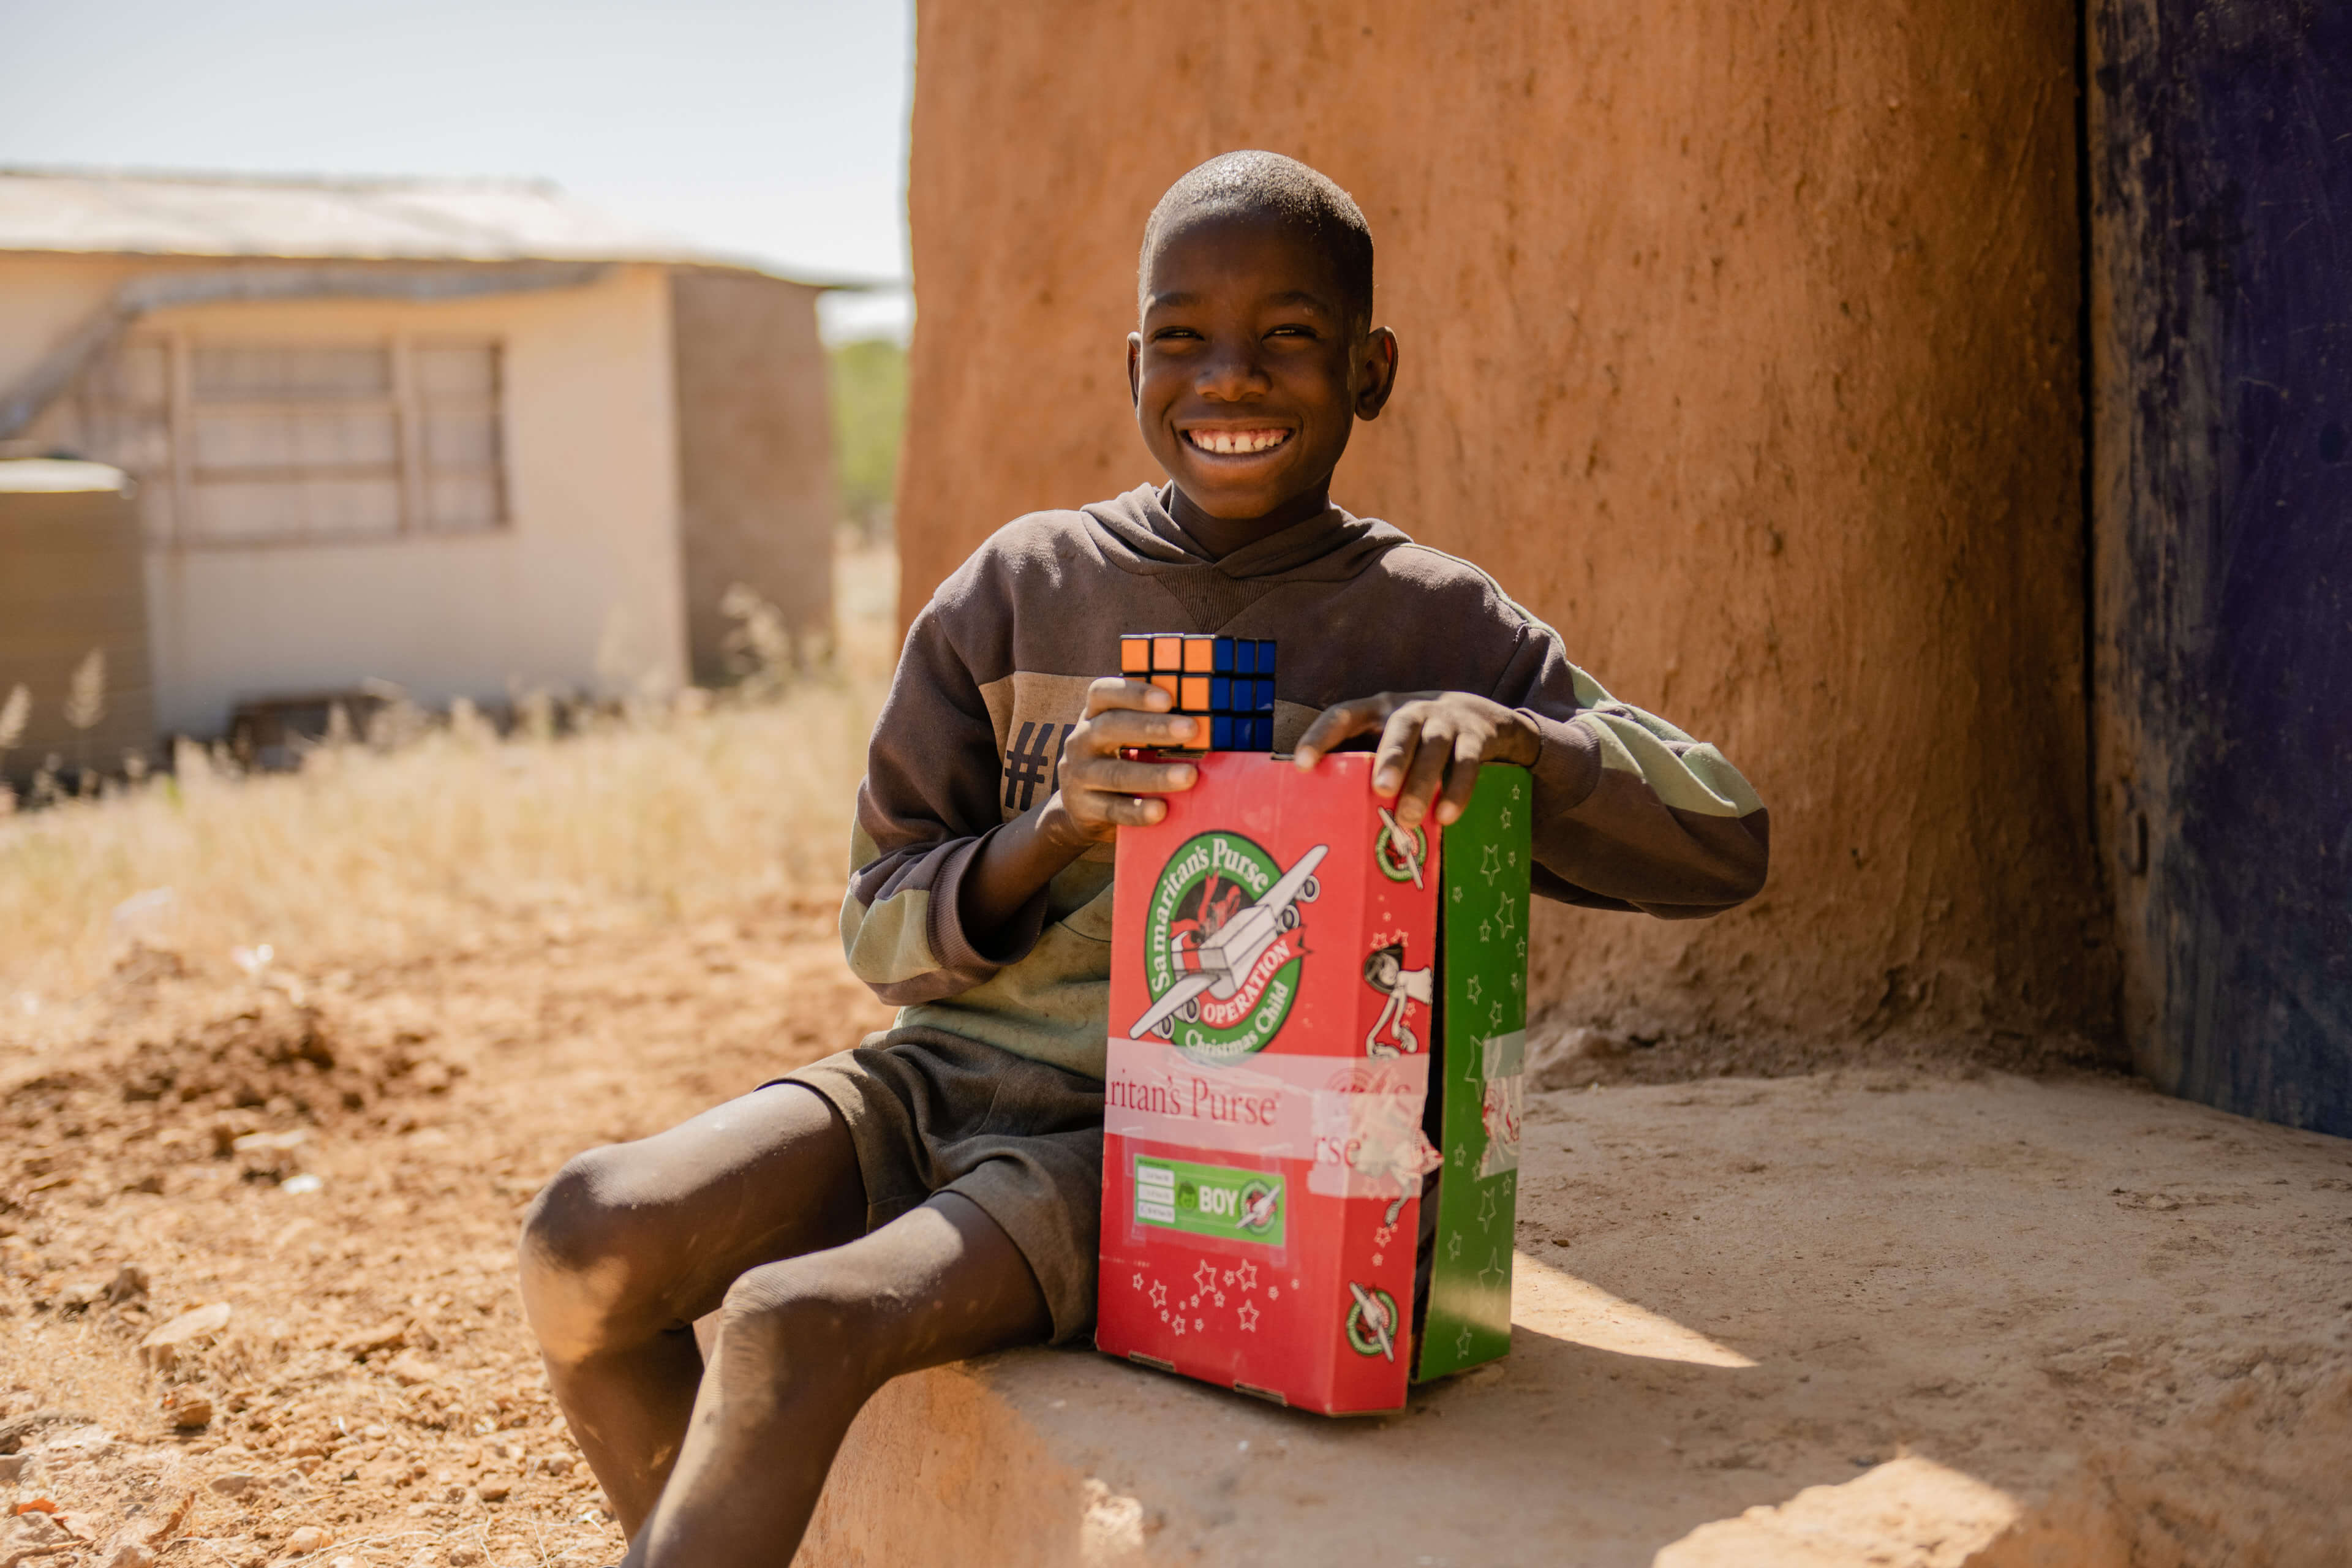 Boy smiling with Operation Christmas Child shoebox.